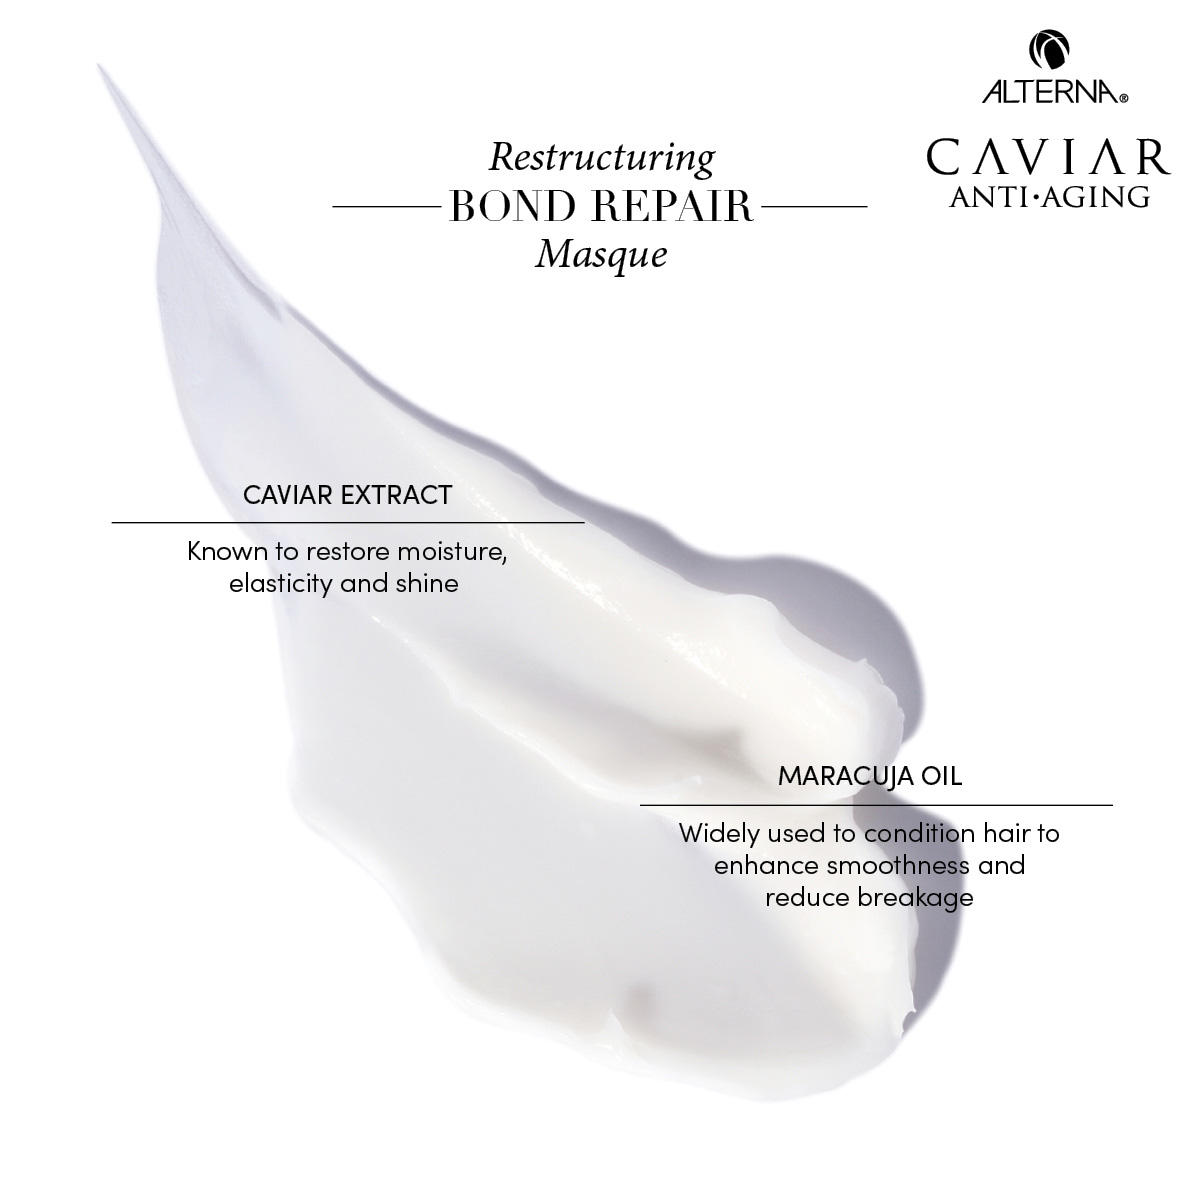 Alterna Caviar Anti-Aging Restructuring Bond Repair Masque 169 g - 4